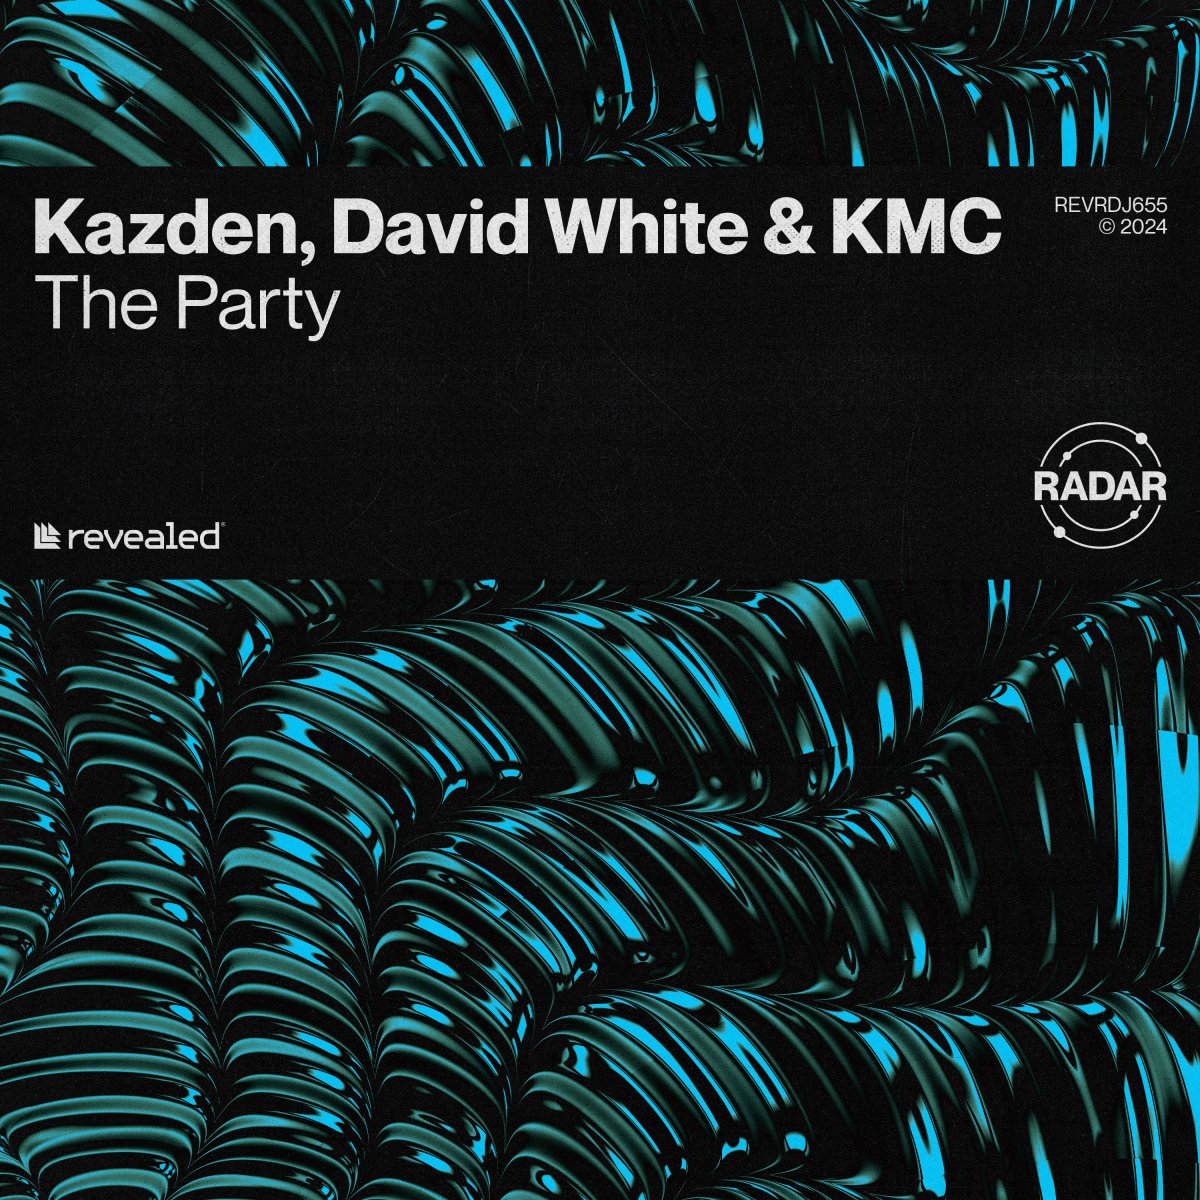 The Party - KAZDEN⁠, DAVID WHITE⁠ & KMC⁠ 